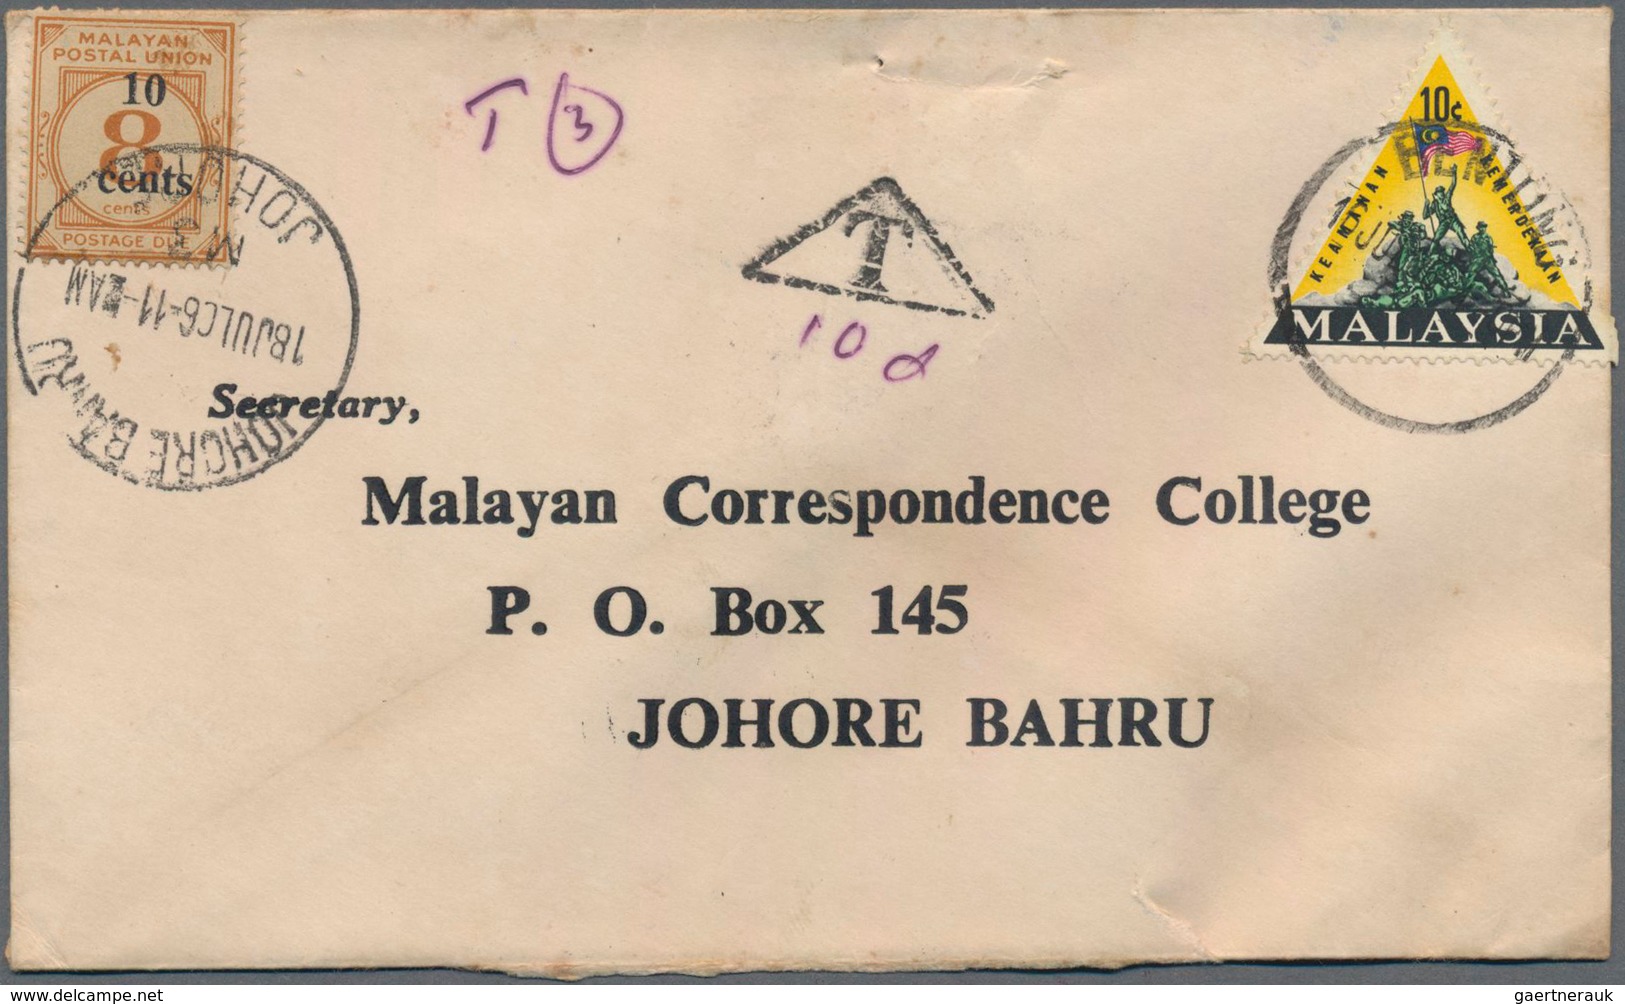 Malaiischer Staatenbund - Portomarken: 1924-1960's POSTAGE DUE STAMPS: About 160 insufficiently fran